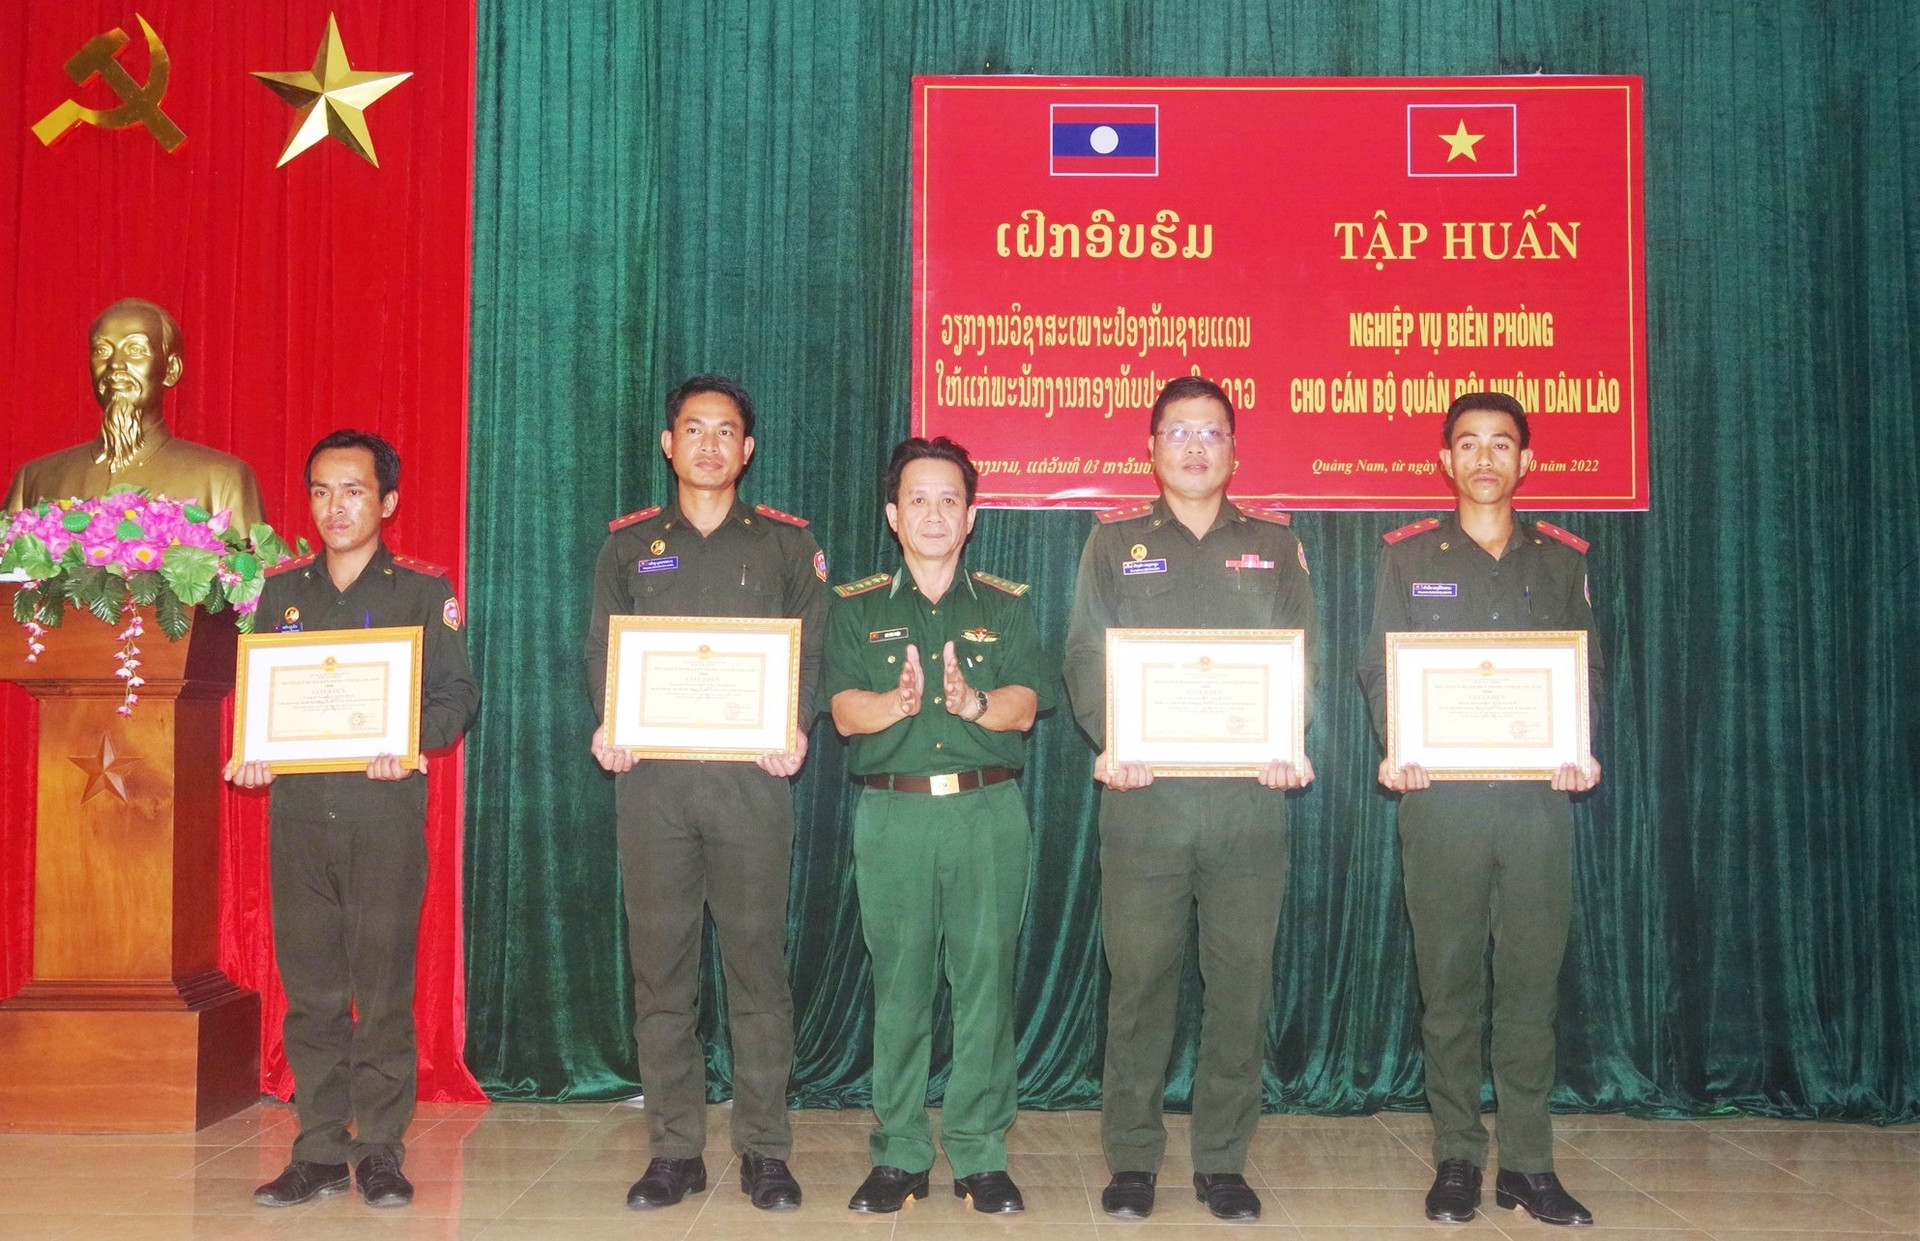 Đại tá Lưu Văn Thiện - Phó Chỉ huy trưởng BĐBP tỉnh trao giấy khen cho các học viên có thành tích xuất sắc trong đợt huấn luyện. Ảnh: HUỲNH CHÍN